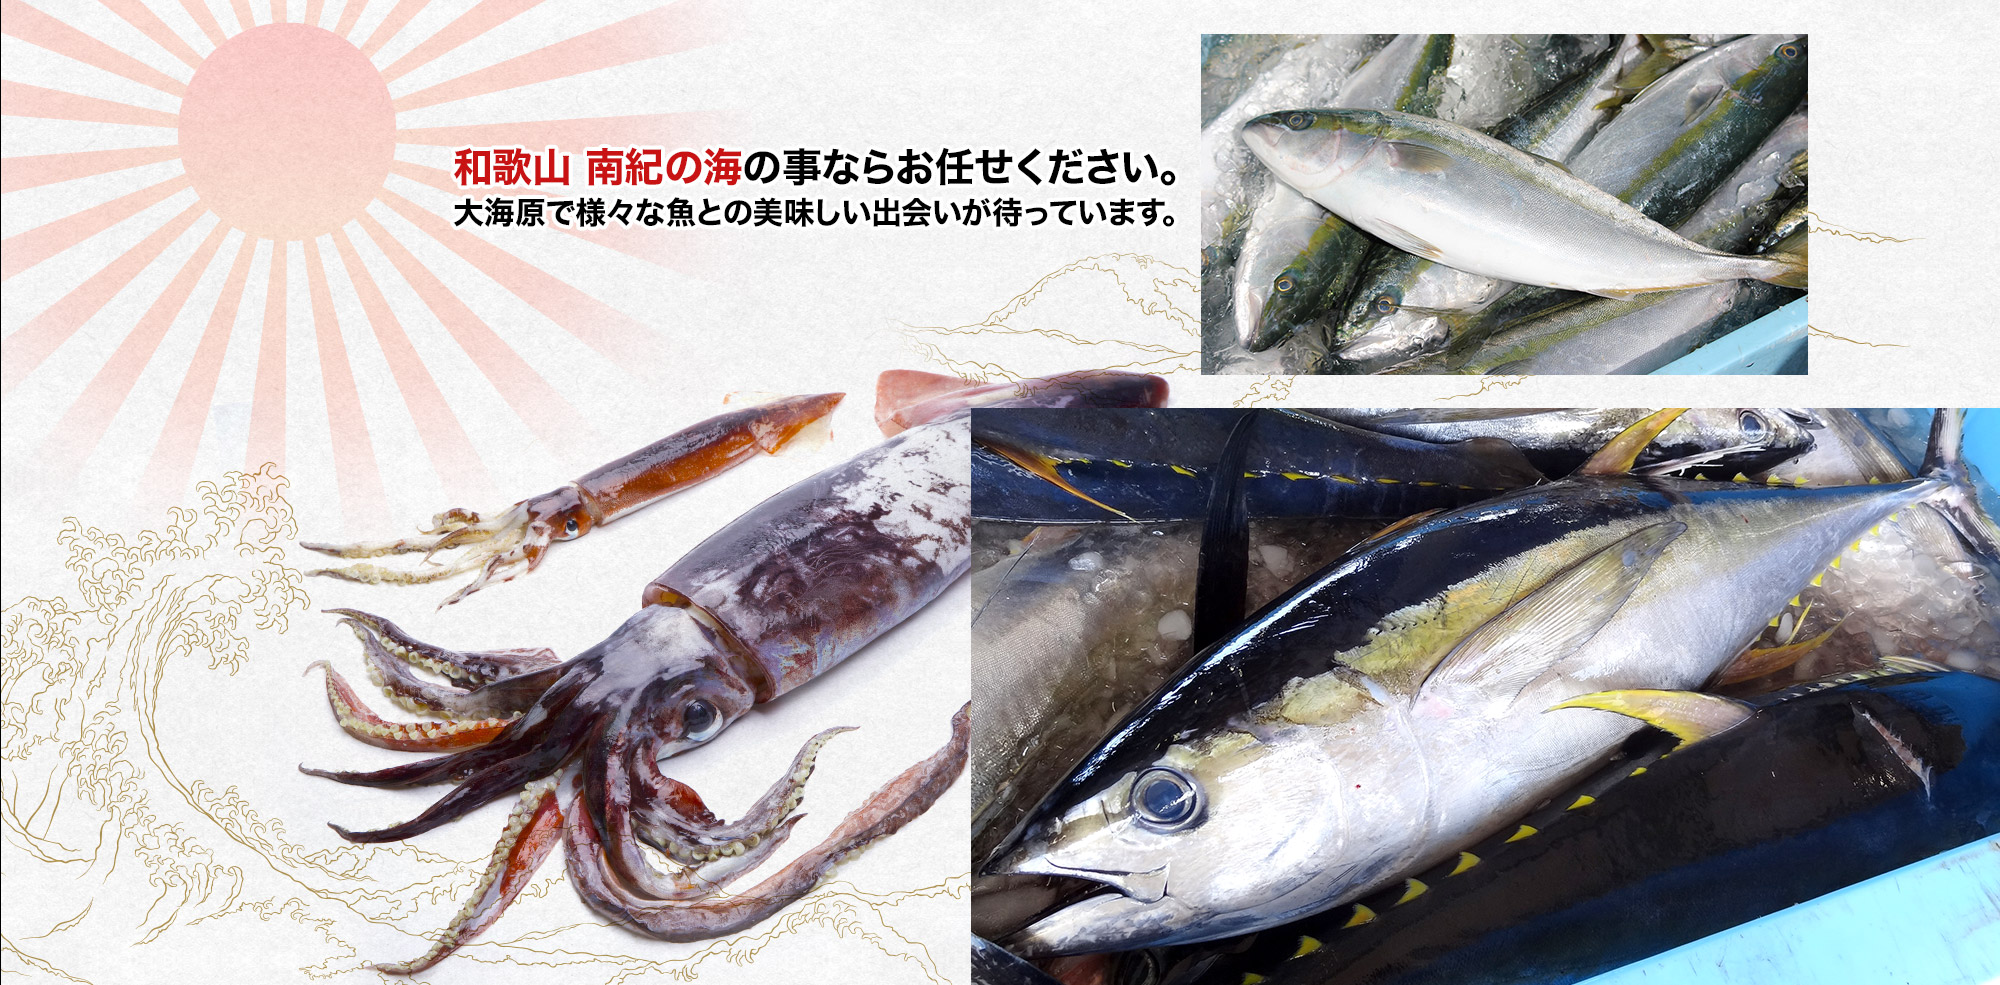 「第一昇龍丸」和歌山 南紀の海の事ならお任せください。大海原で様々な魚との美味しい出会いが待っています。